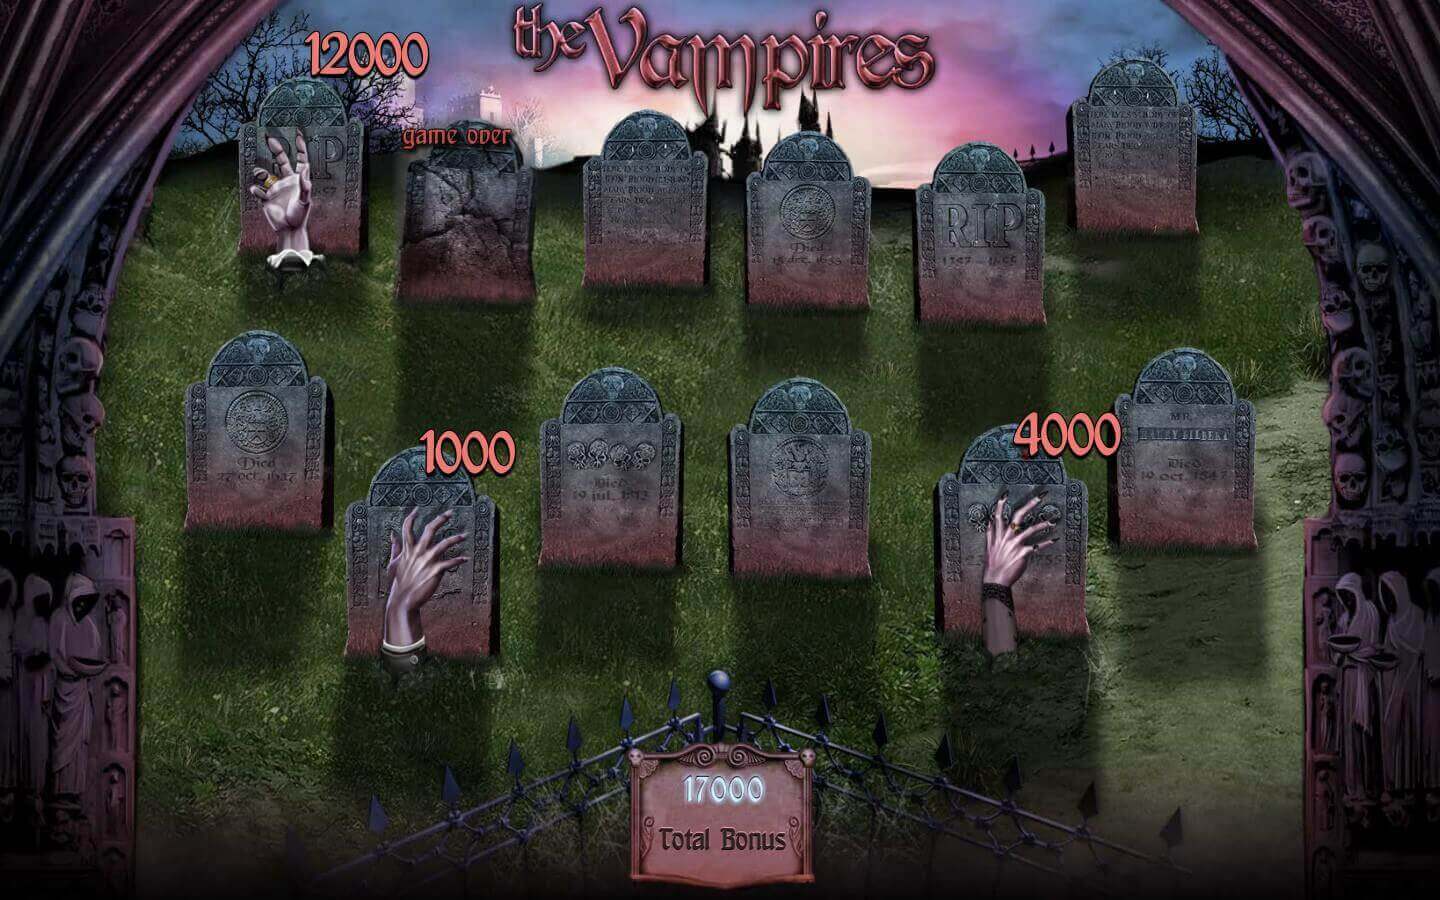 The Vampires Spel proces